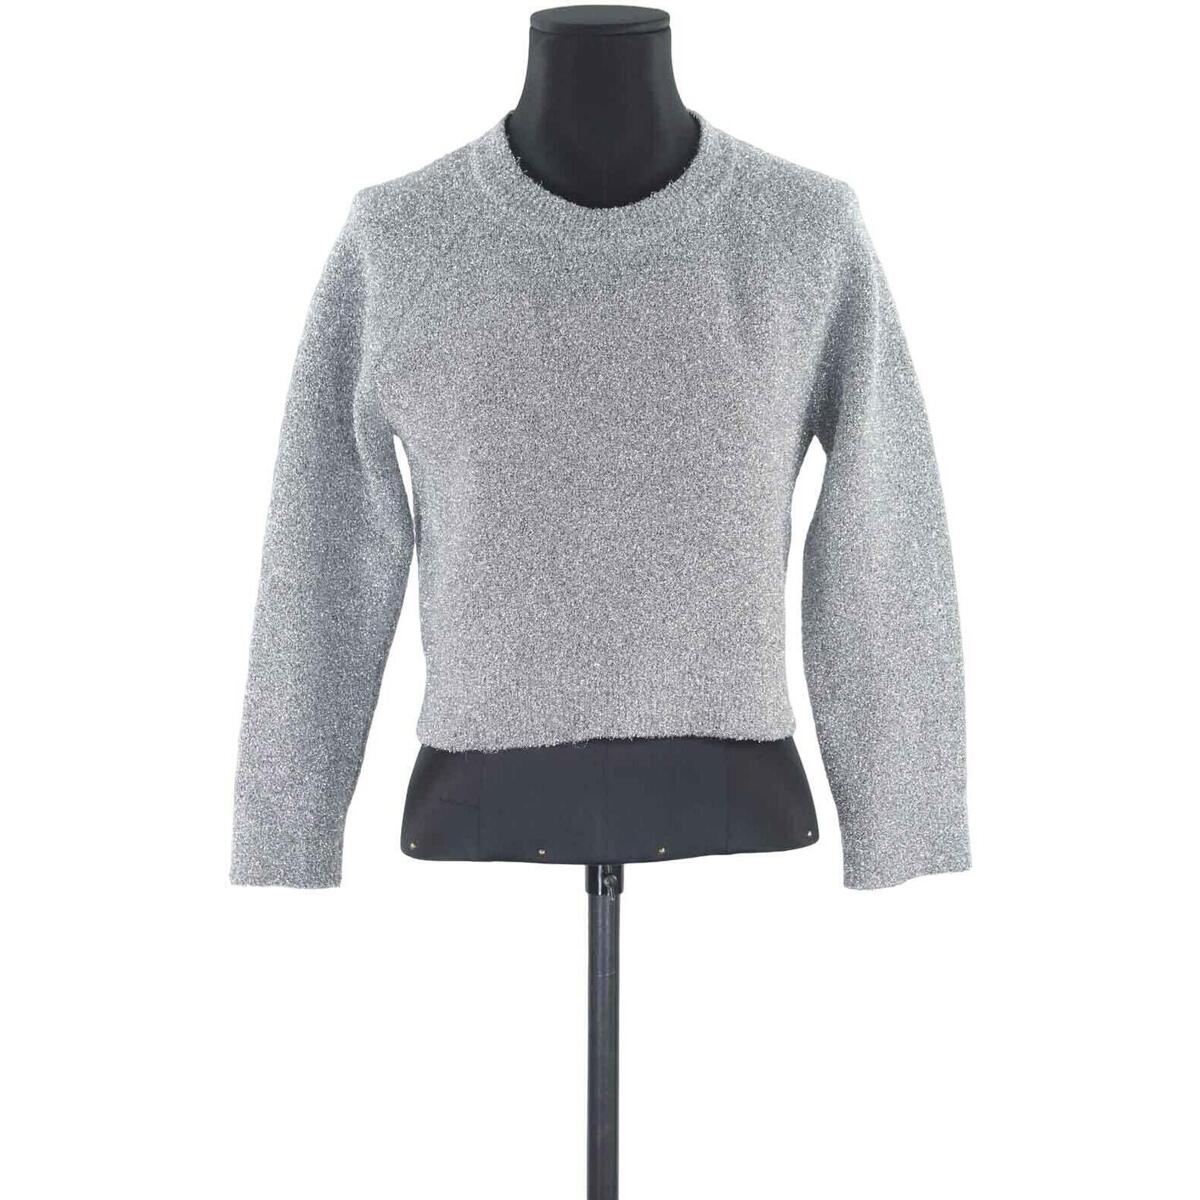 Vêtements Femme urban classics garment dye oversize pique t shirt black Top gris Gris